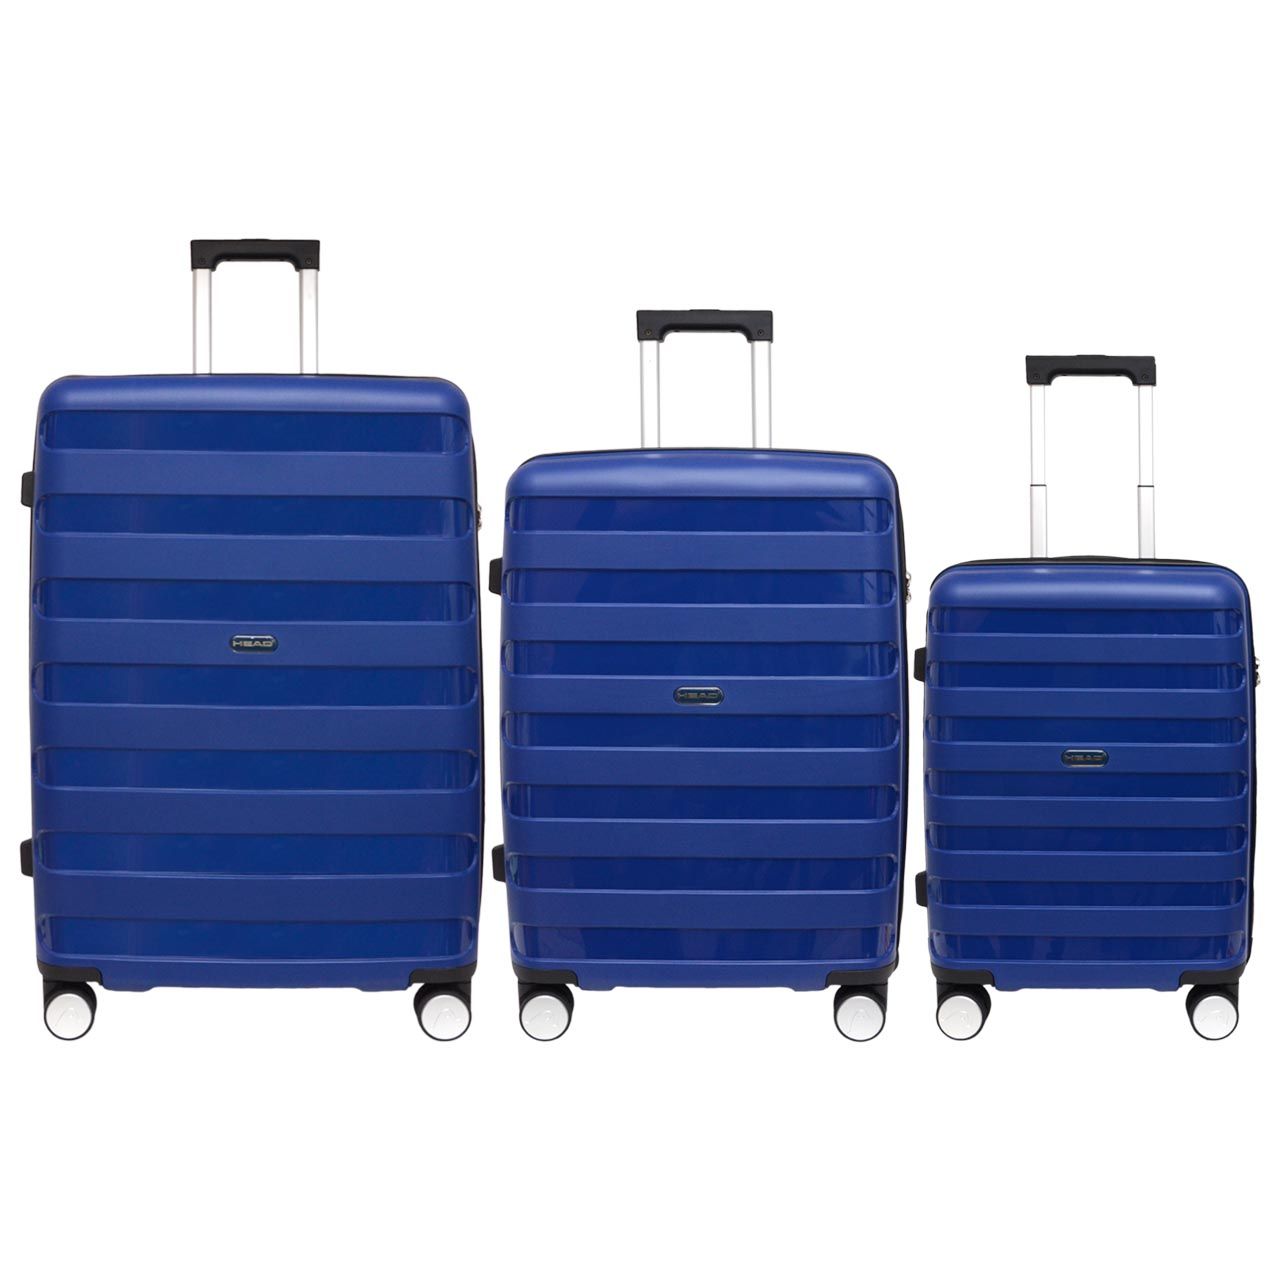 مجموعه سه عددی چمدان هد مدل HL 004 -  - 4